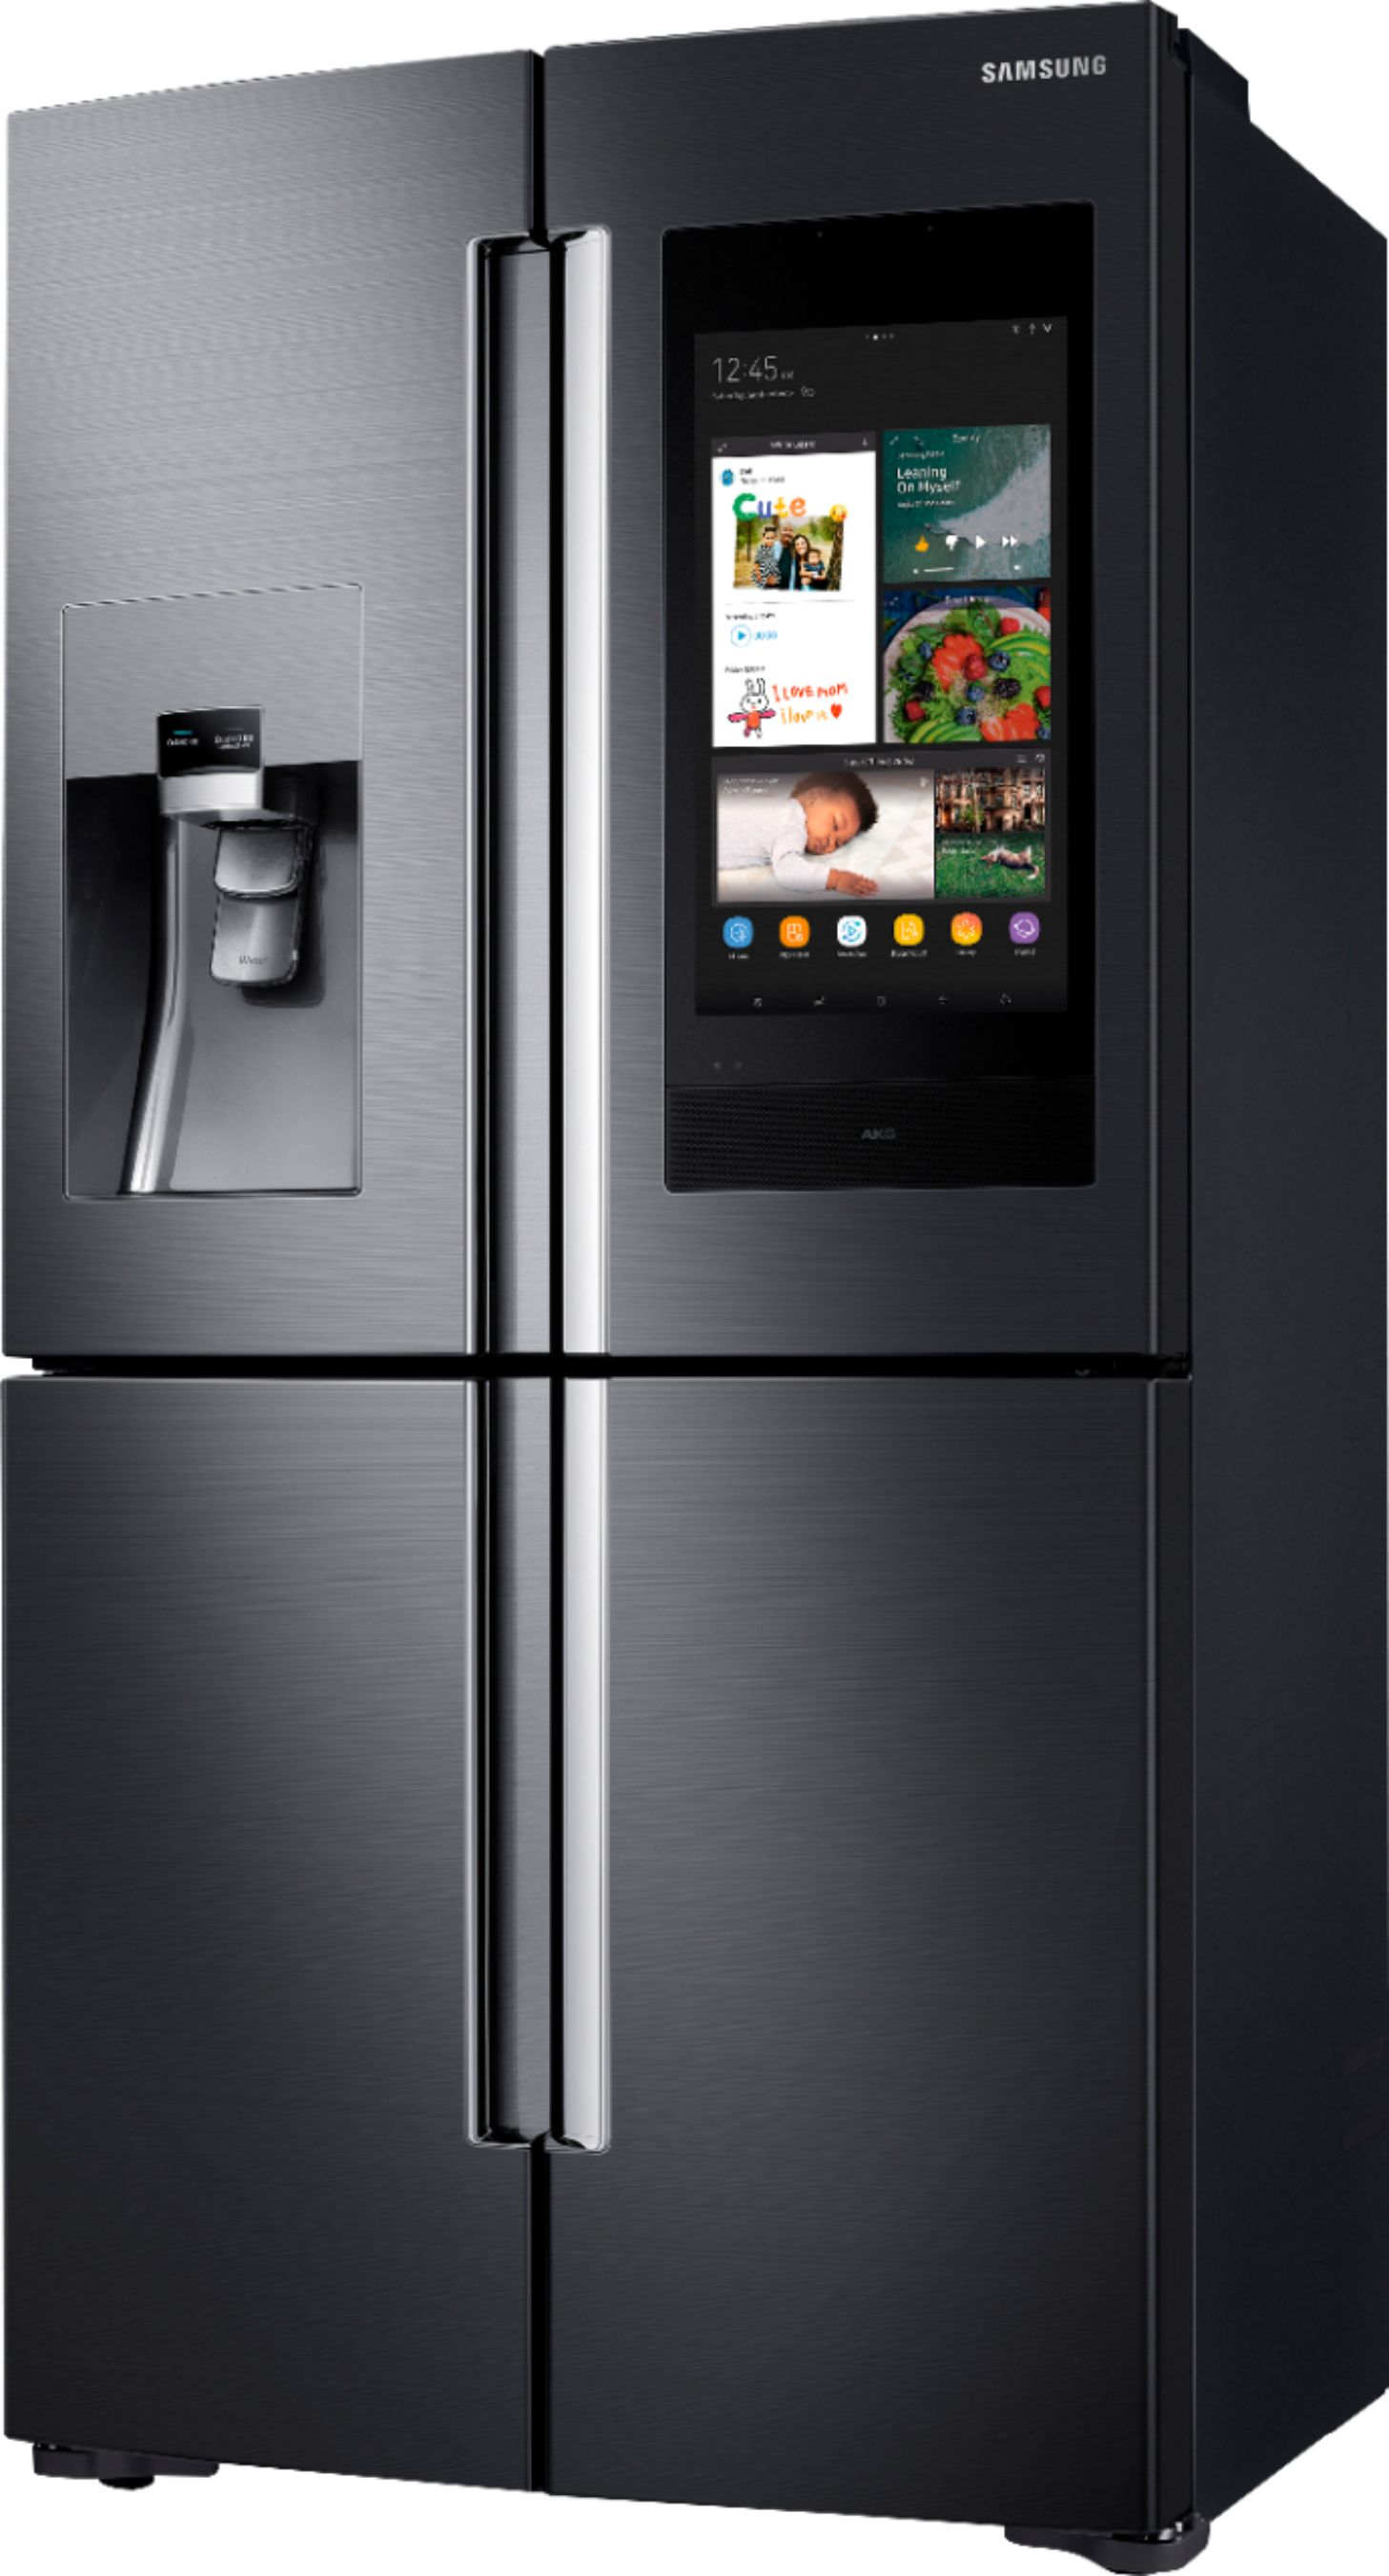 Left View: Samsung - Family Hub 28 Cu. Ft. 4-Door Flex French Door  Fingerprint Resistant Refrigerator - Black stainless steel